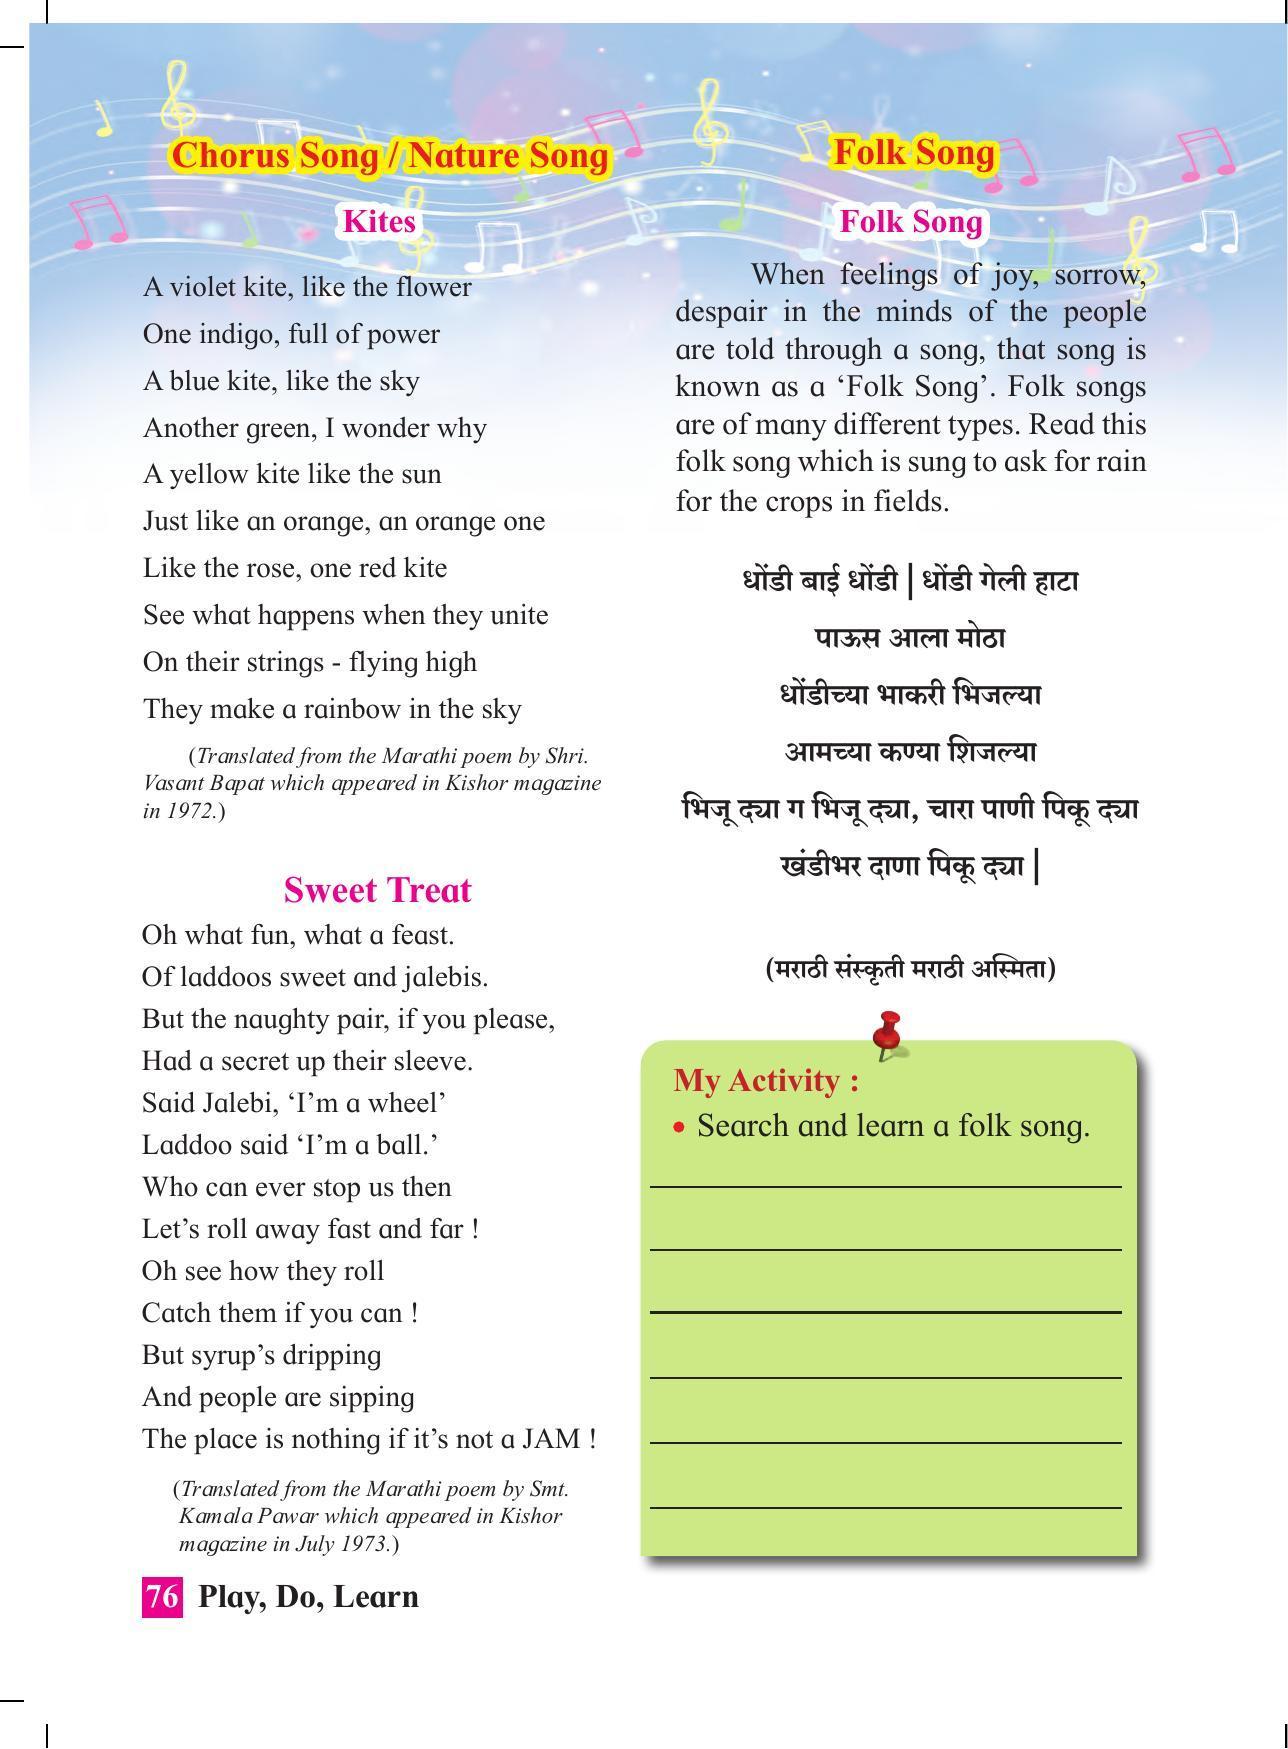 Maharashtra Board Class 4 Play Do Learn (English Medium) Textbook - Page 85